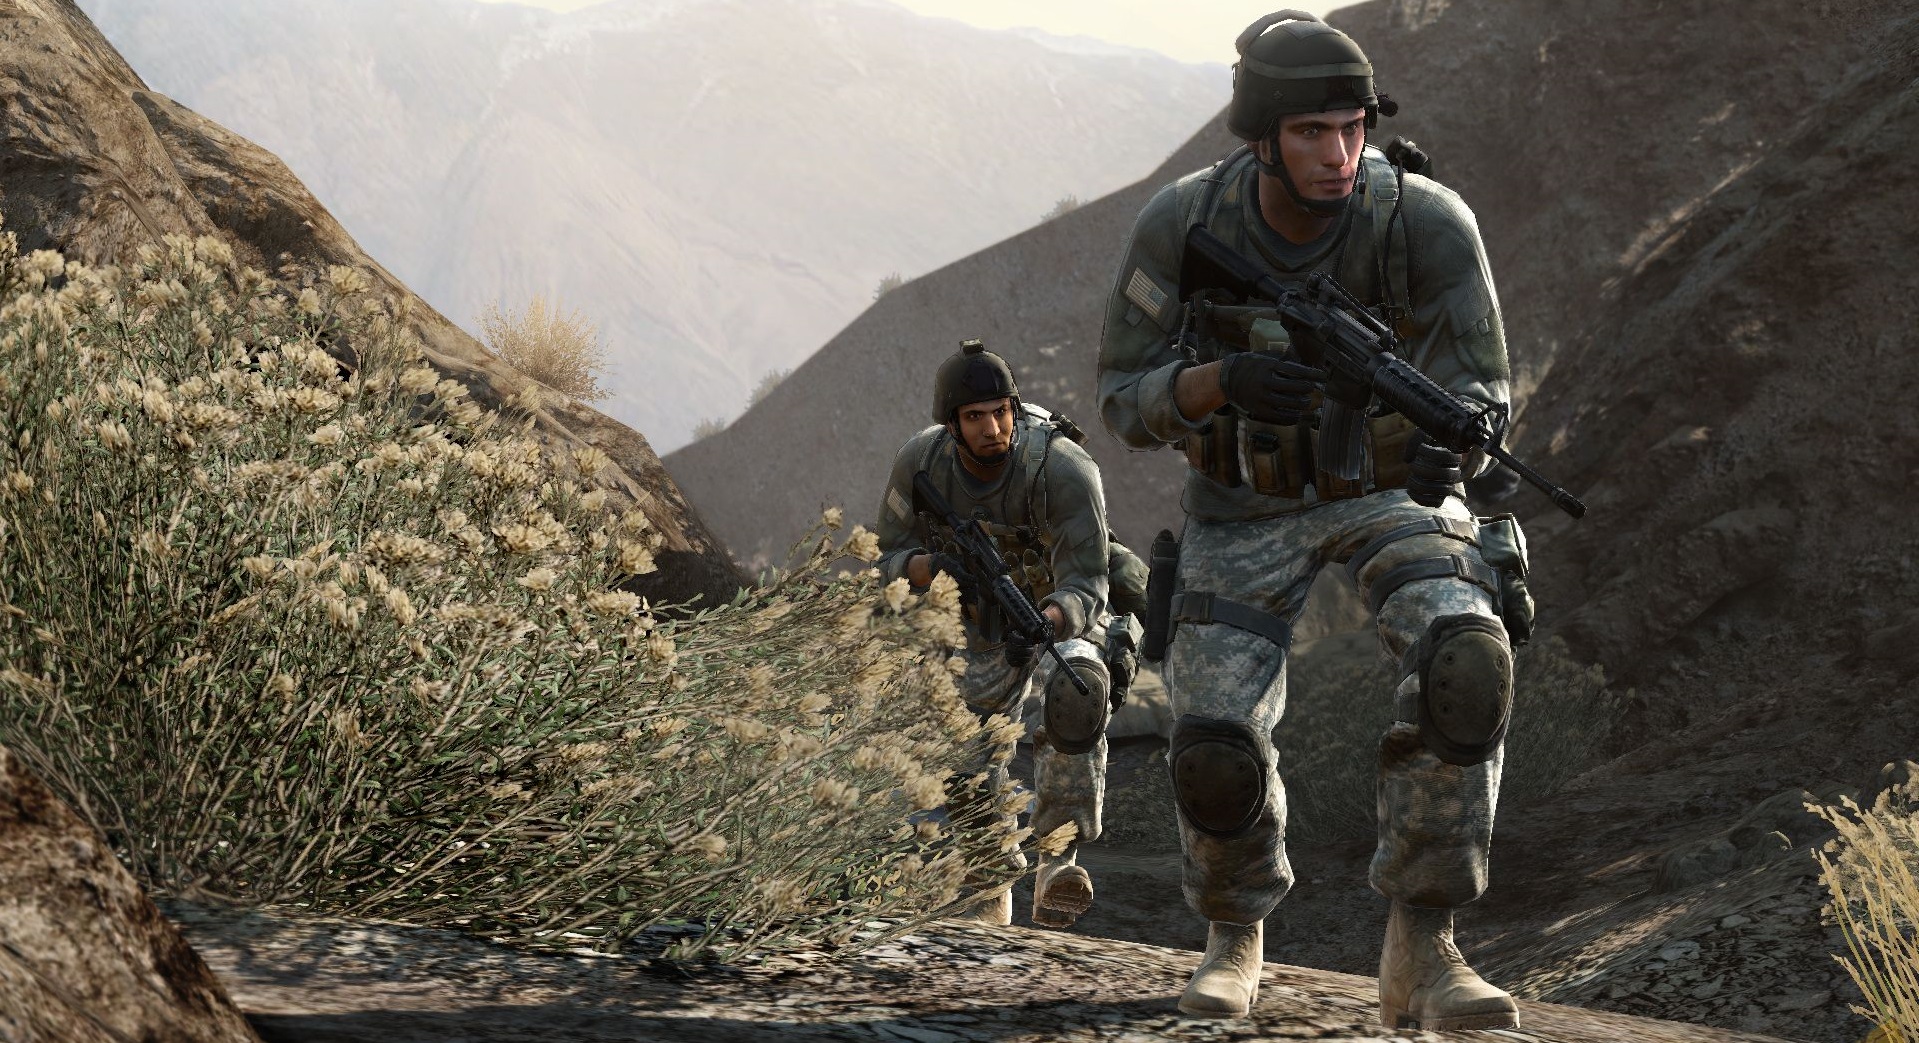 Buy Medal of Honor 2010 PC Game | Origin Download